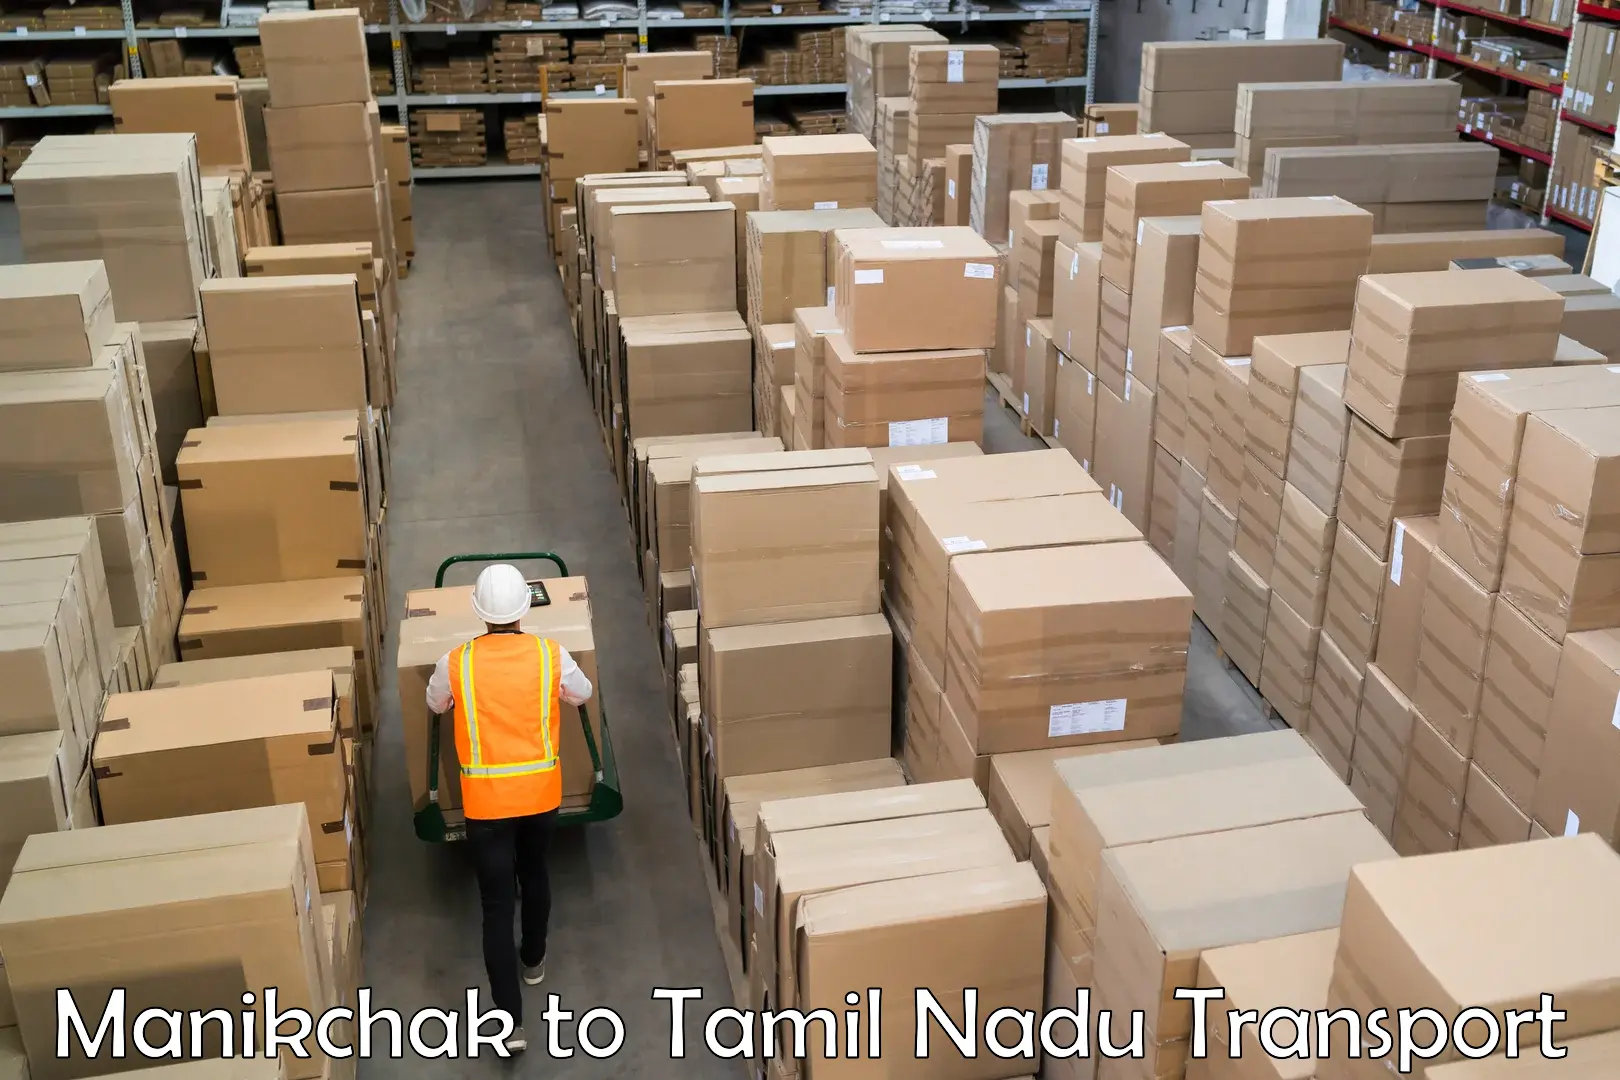 India truck logistics services Manikchak to Rathinasabapathy Puram